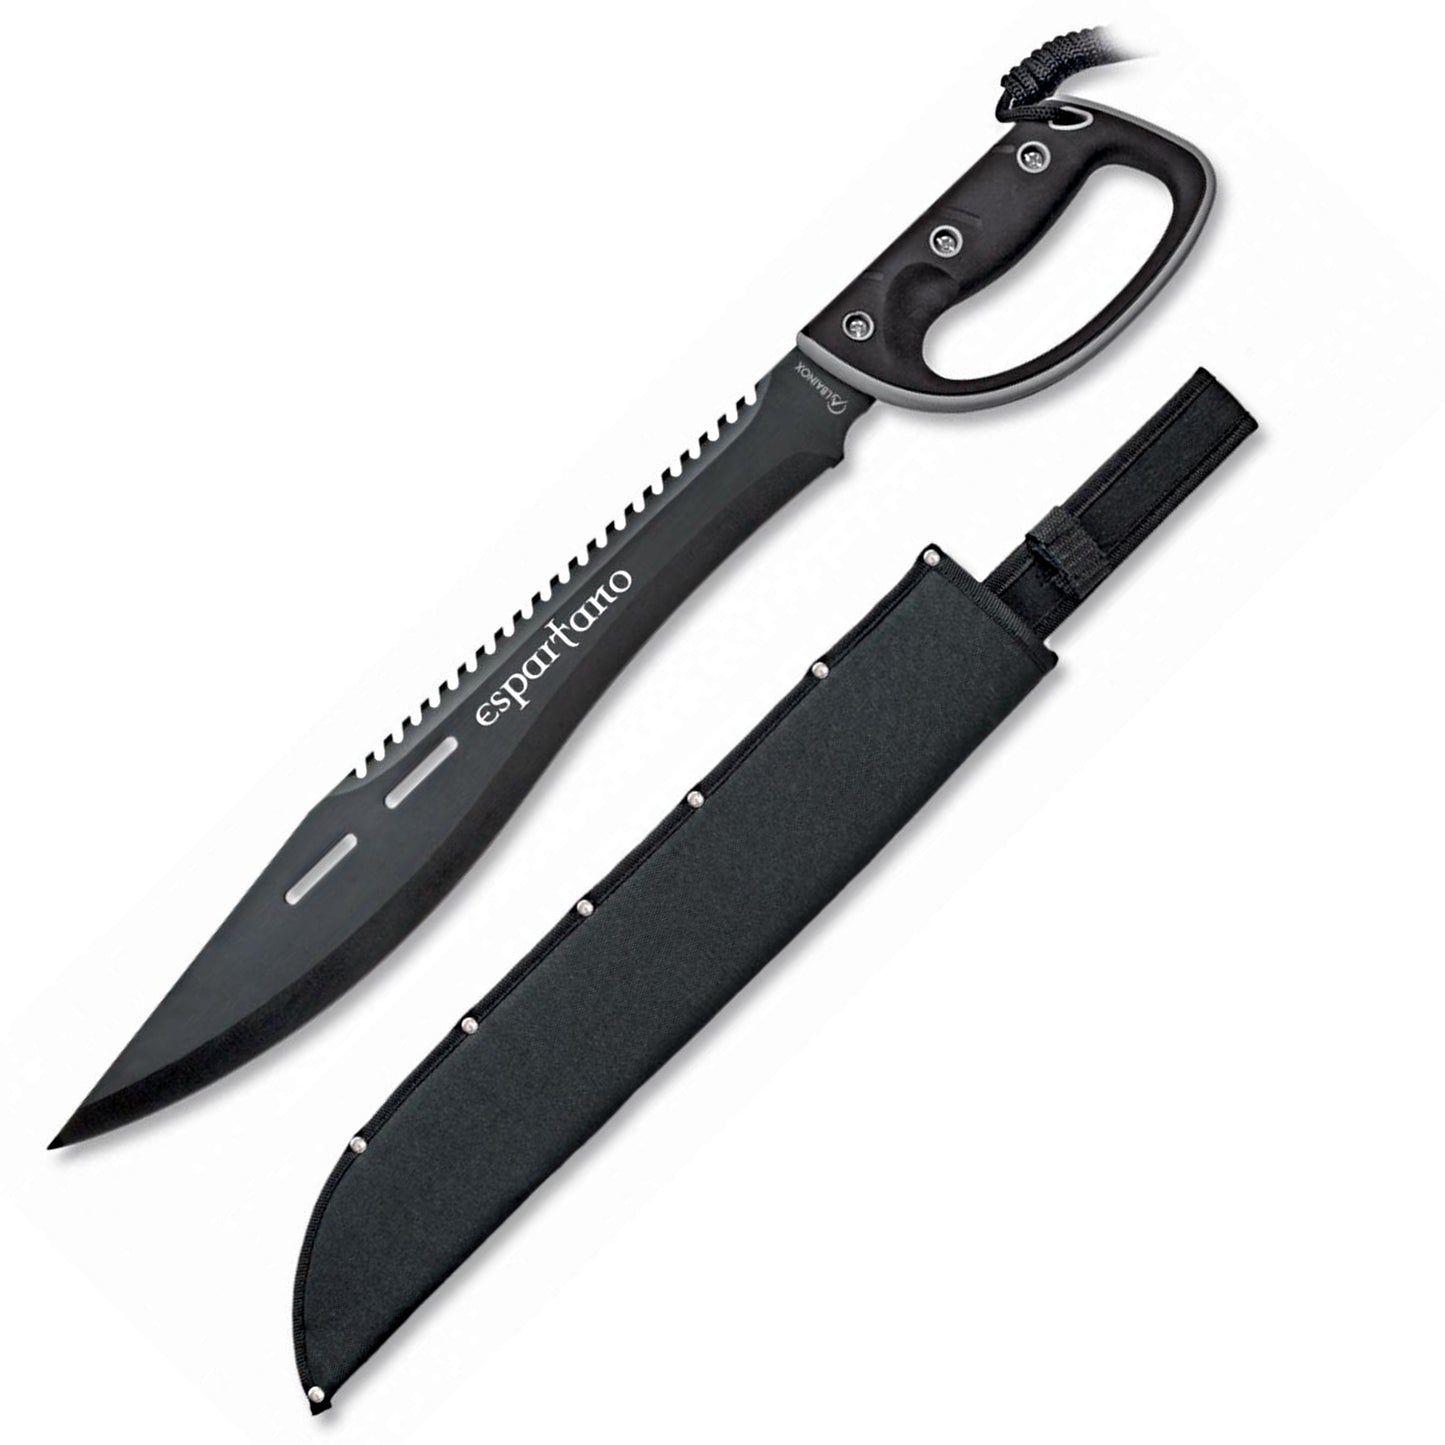 Machete de supervivencia cortacañas espartano negro con funda y mango del mismo color. Vendido por Espadas y más